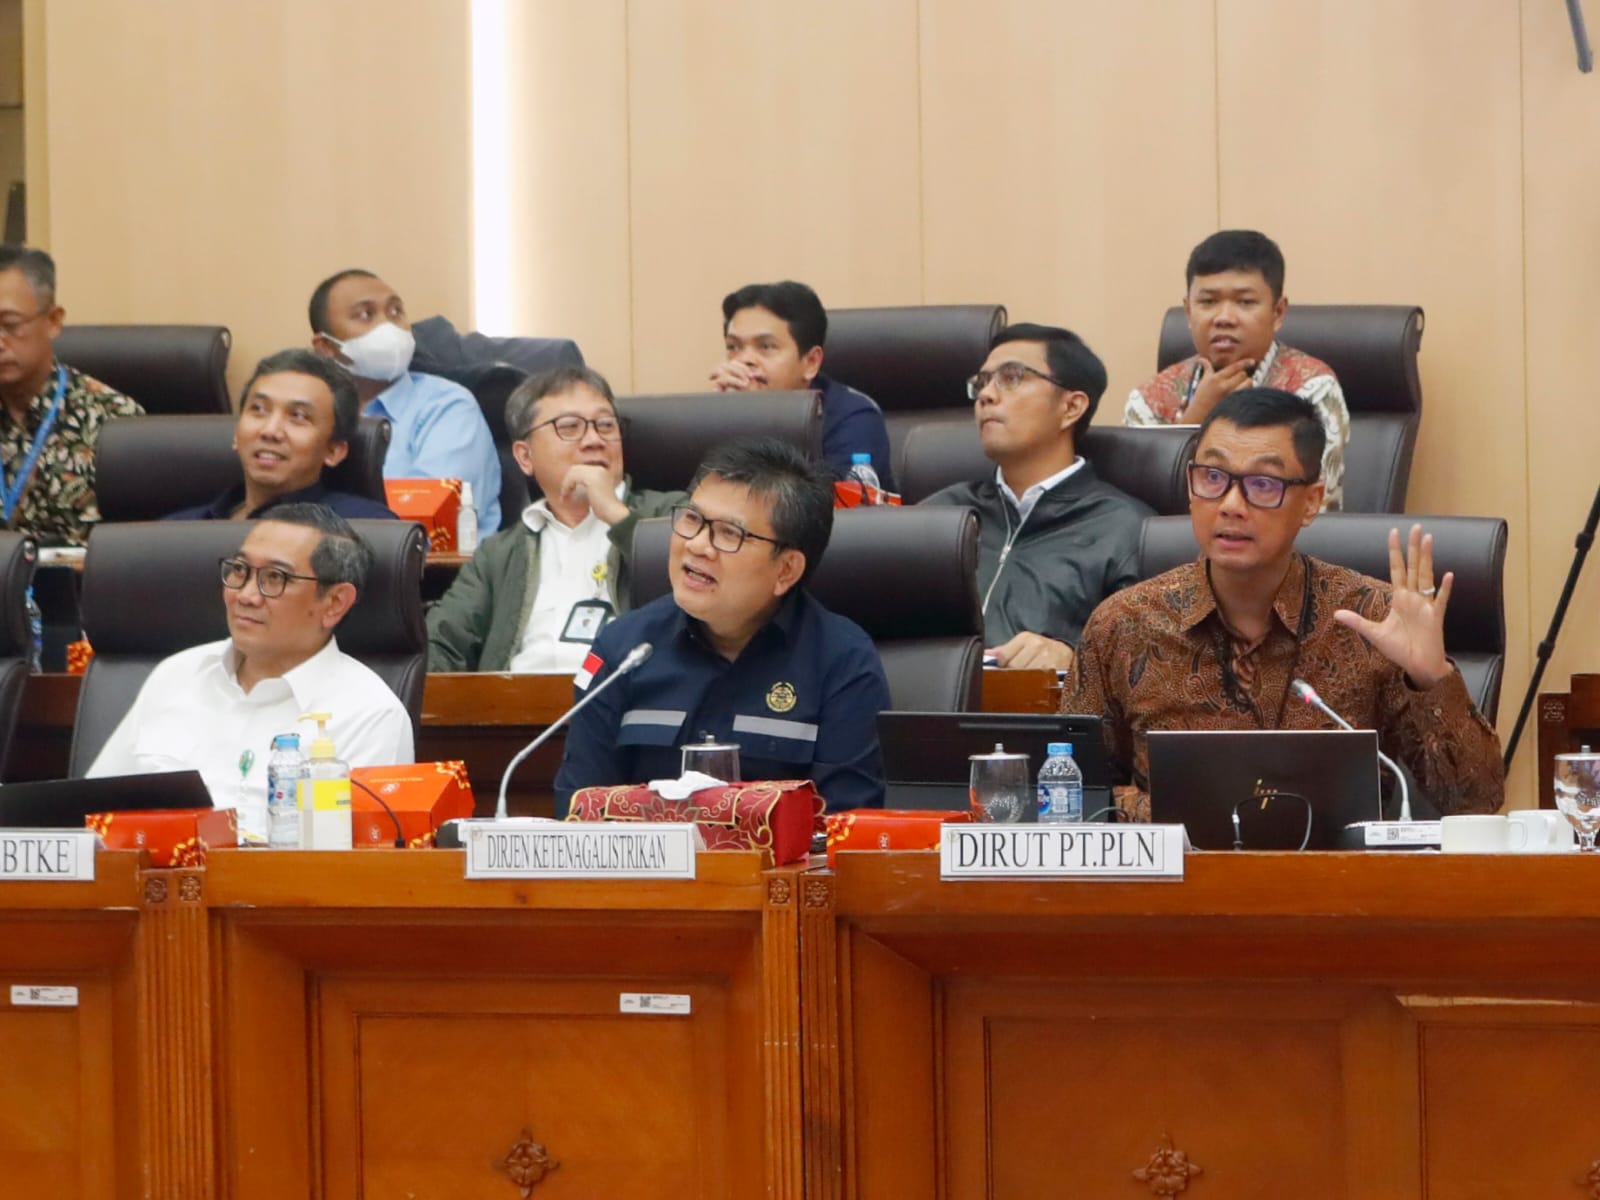 Direktur Utama PLN Darmawan Prasodjo (kanan) saat memaparkan skenario  _Accelerated Renewable Energy Development_ (ARED) untuk meningkatkan penggunaan energi terbarukan di Indonesia pada Rapat Dengar Pendapat dengan Komisi VII DPR RI, Rabu (15/11), di Jak